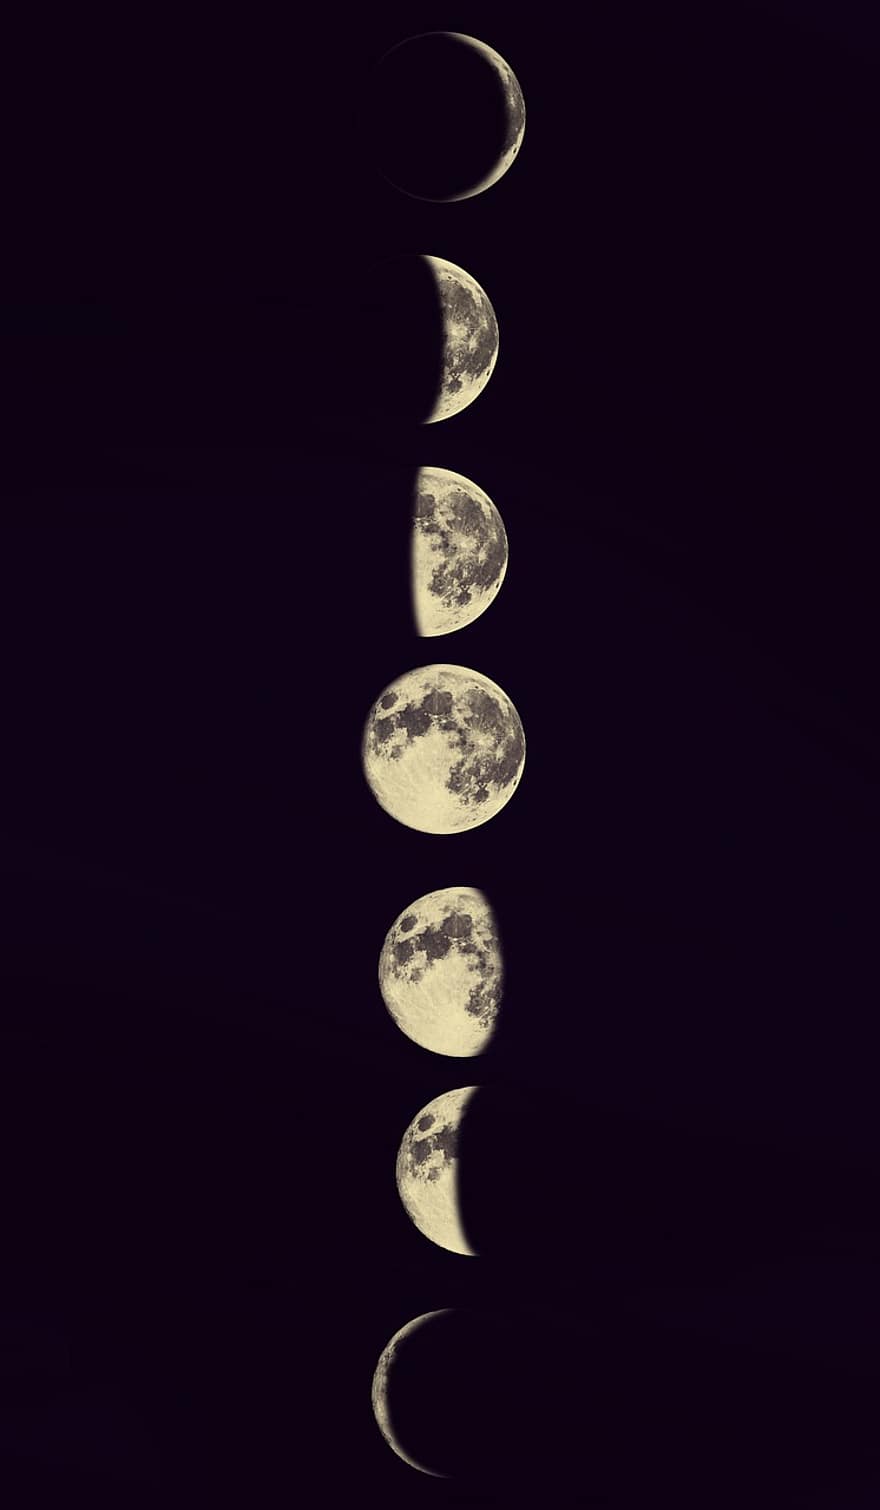 měsíc, fáze Měsíce, noc, planeta, prostor, pozadí, symbol, koule, ilustrace, lesklý, mapa světa